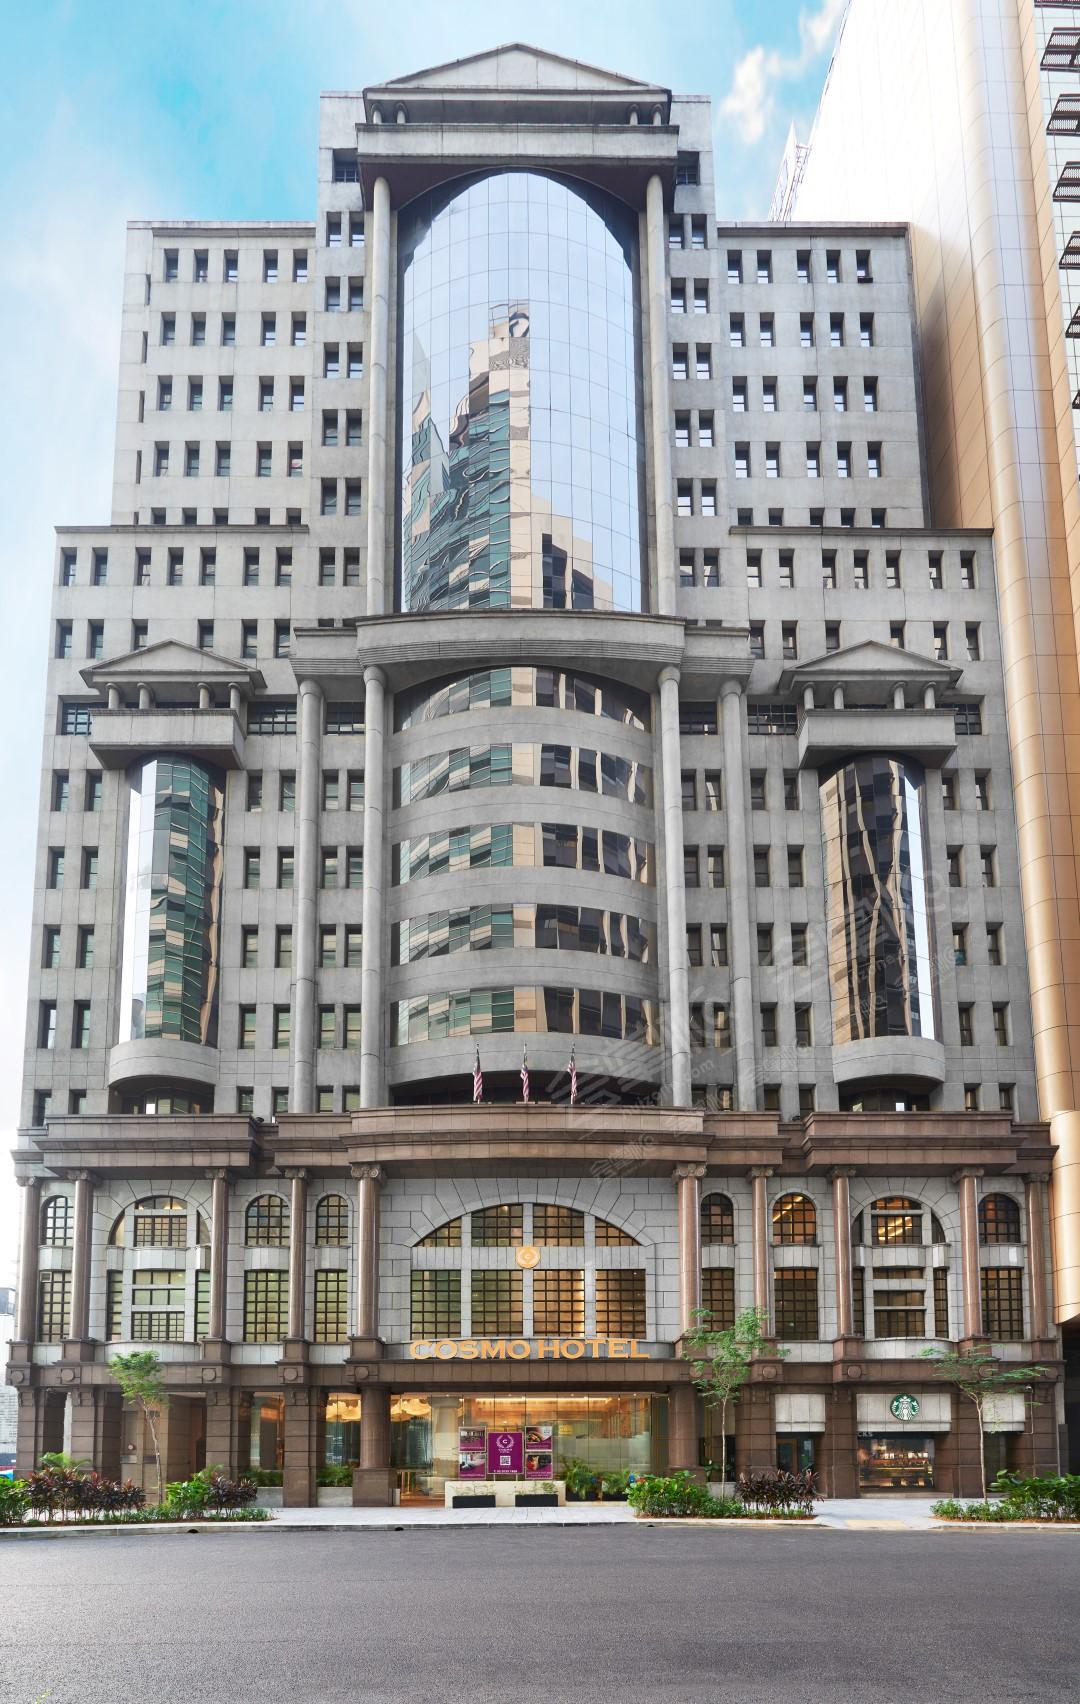 吉隆坡四星级酒店最大容纳200人的会议场地|宇宙吉隆坡酒店(Cosmo Hotel Kuala Lumpur)的价格与联系方式